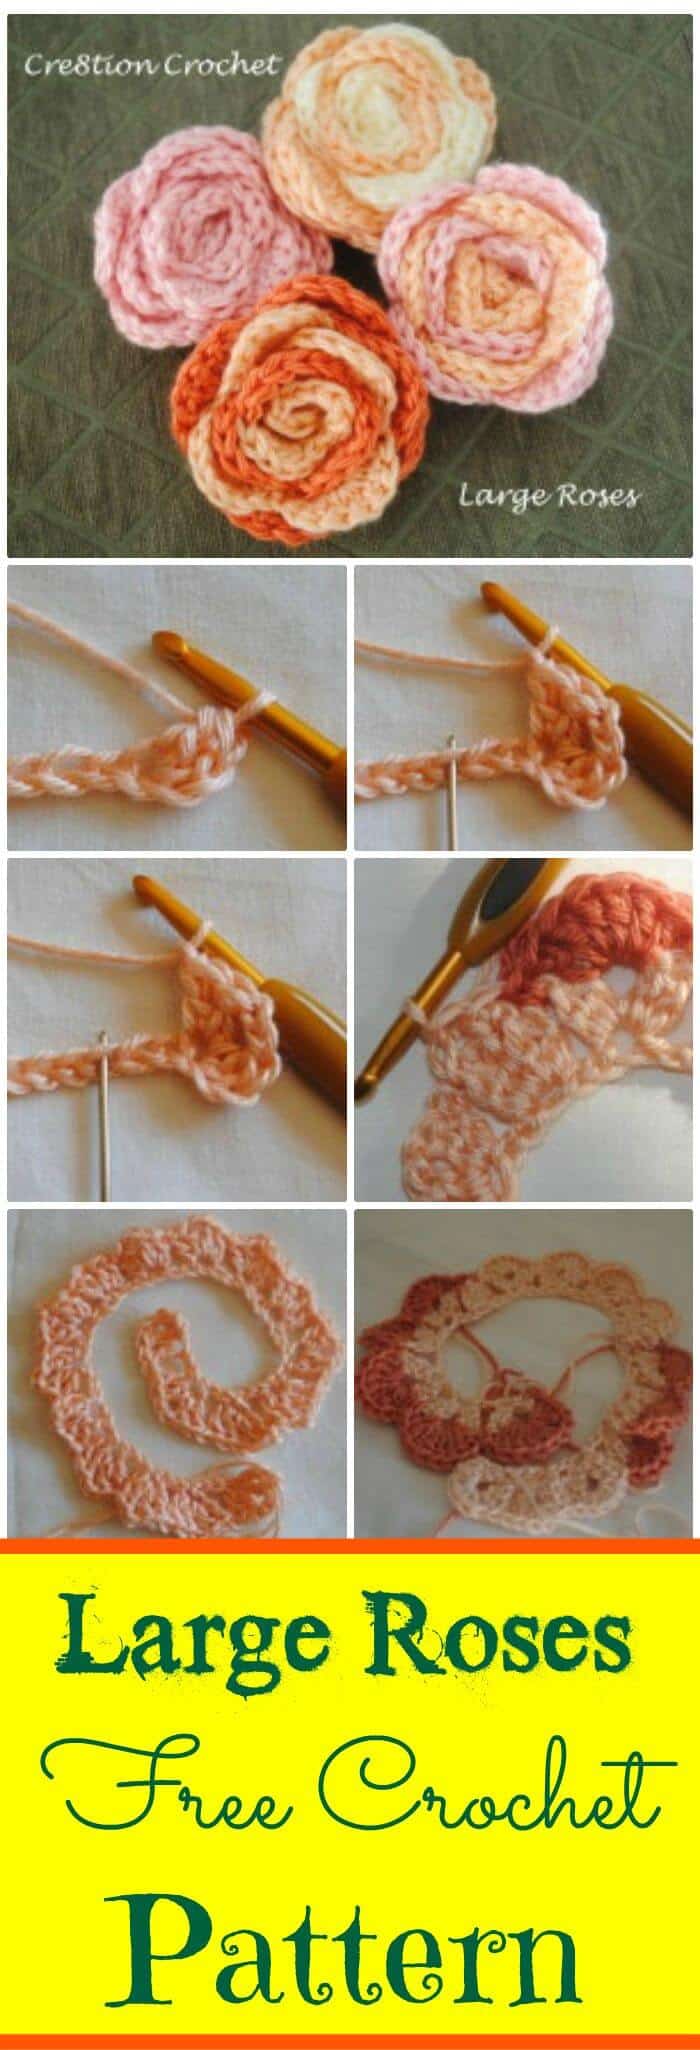 DIY Large Roses Free Crochet Pattern, tutoriales sencillos de flores de ganchillo paso a paso.  Patrones de flores de ganchillo fáciles!